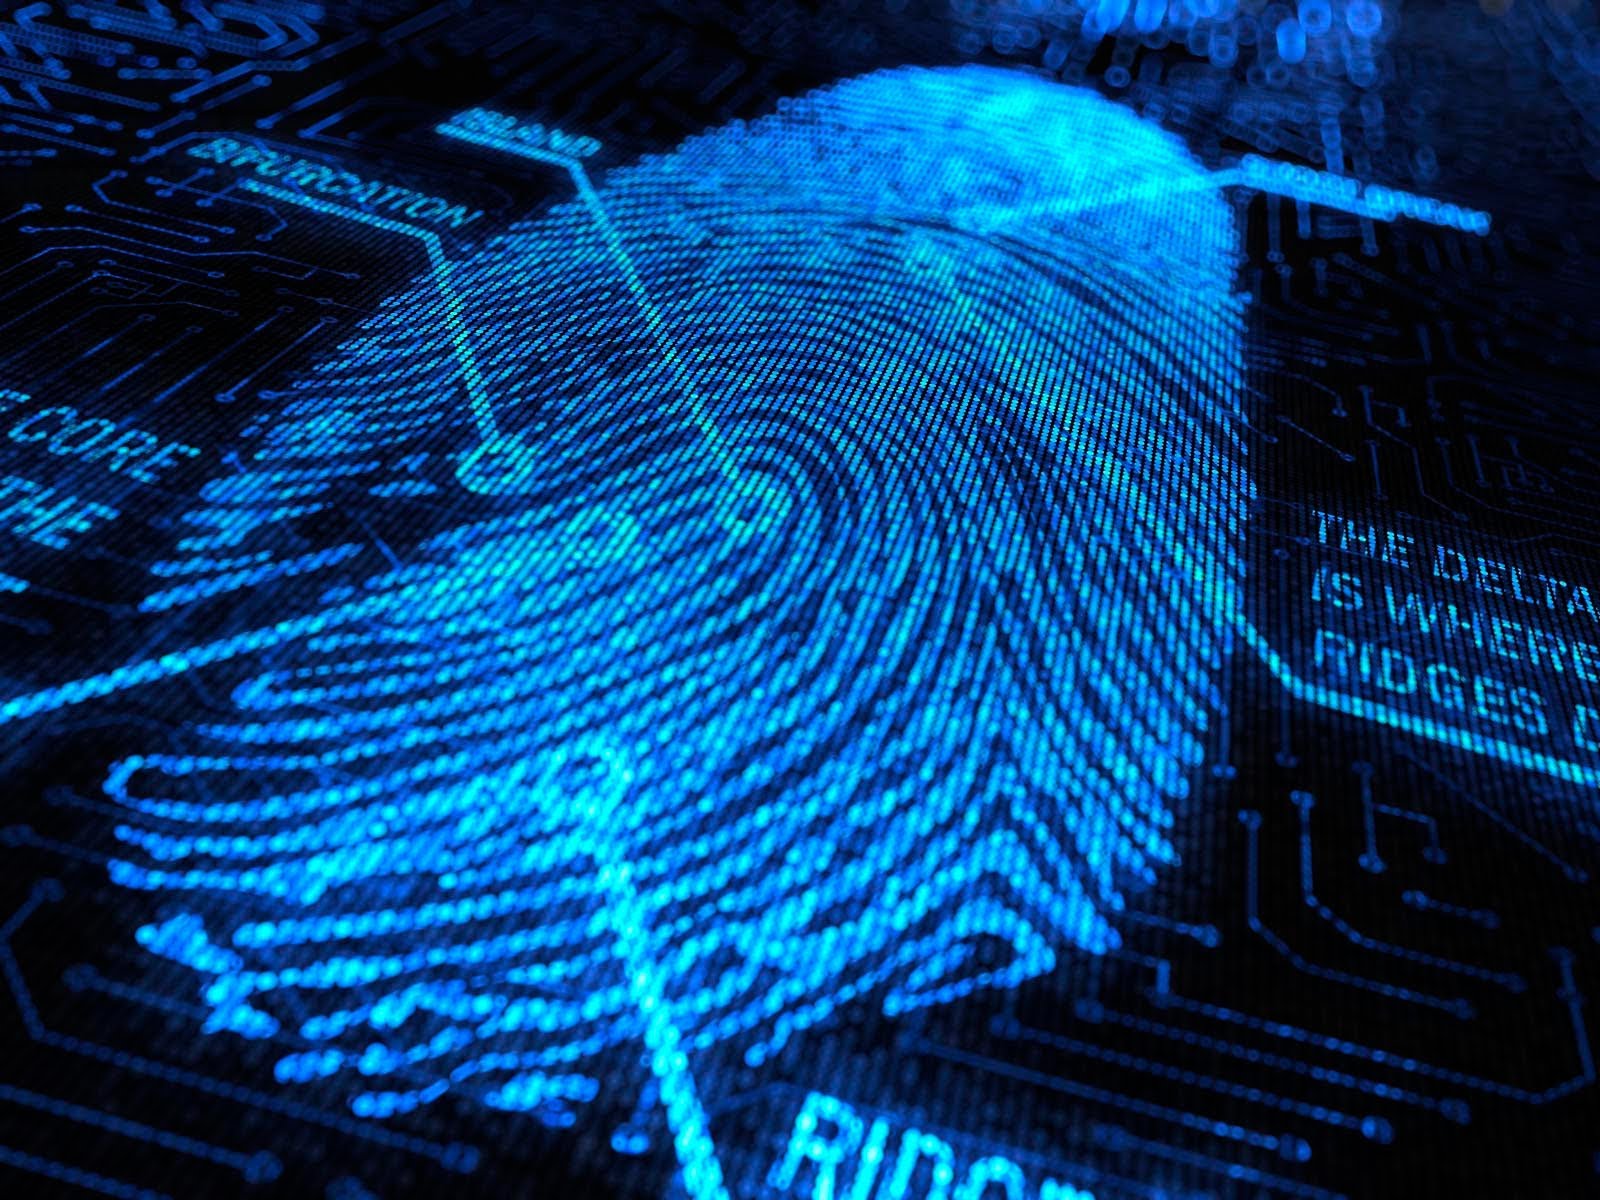 Fingerprint-i.t – Fingerprint Identification Technology